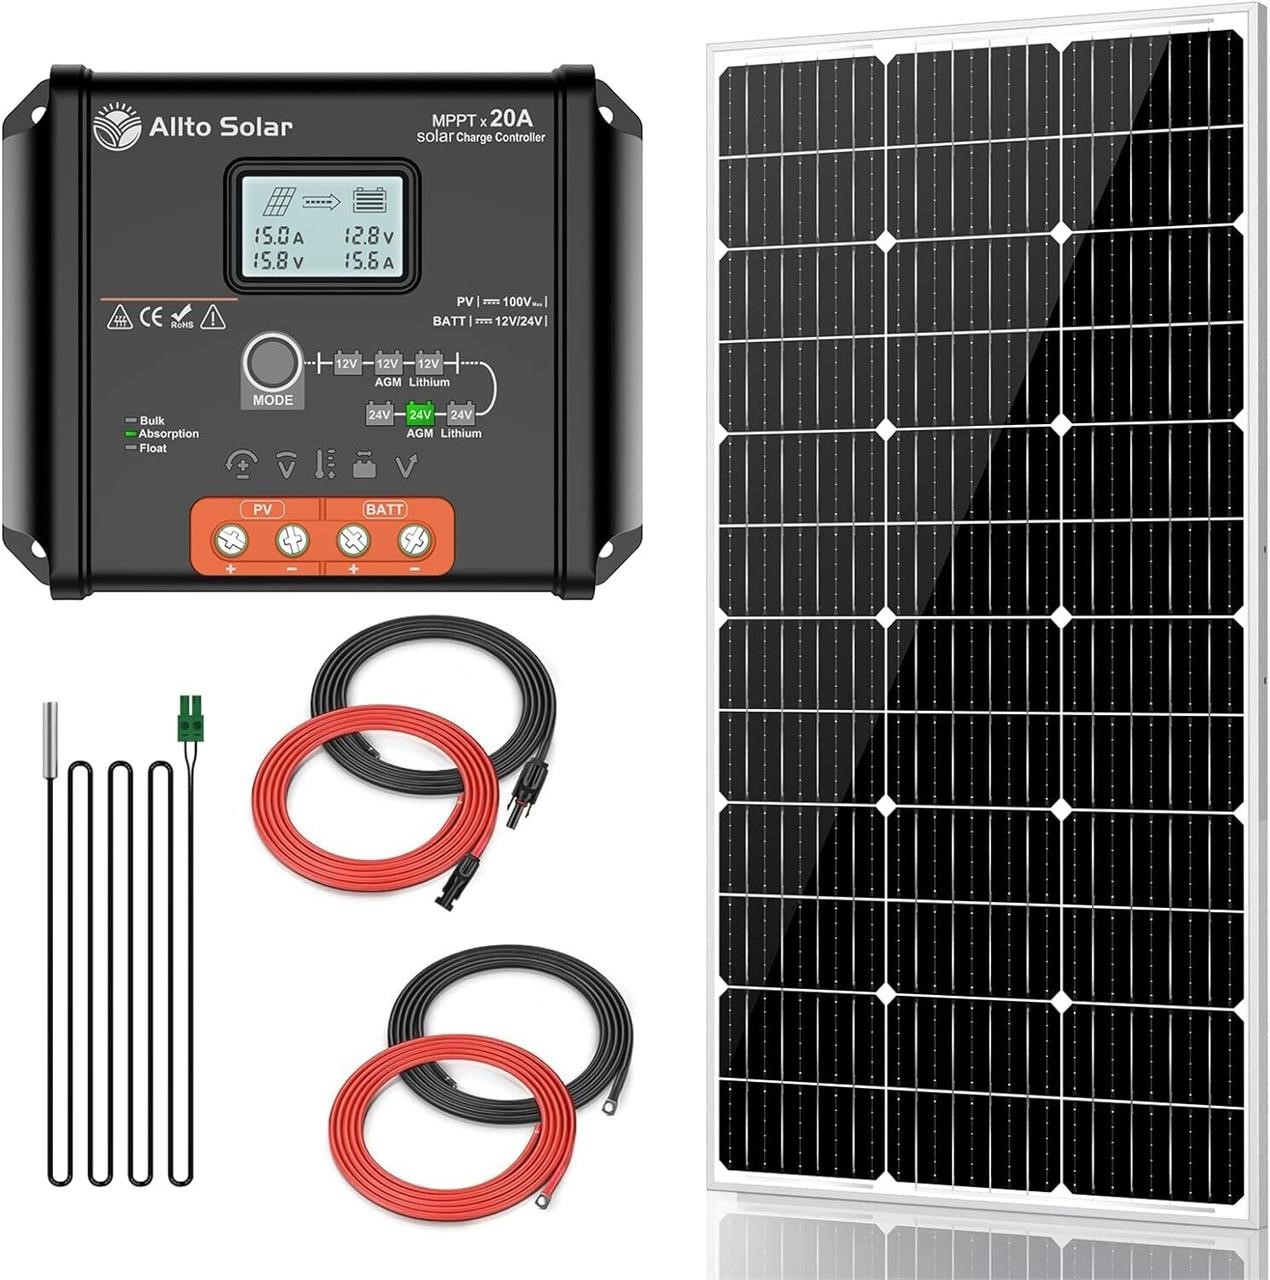 $130  Allto Solar 100W 12V Kit  20A Controller